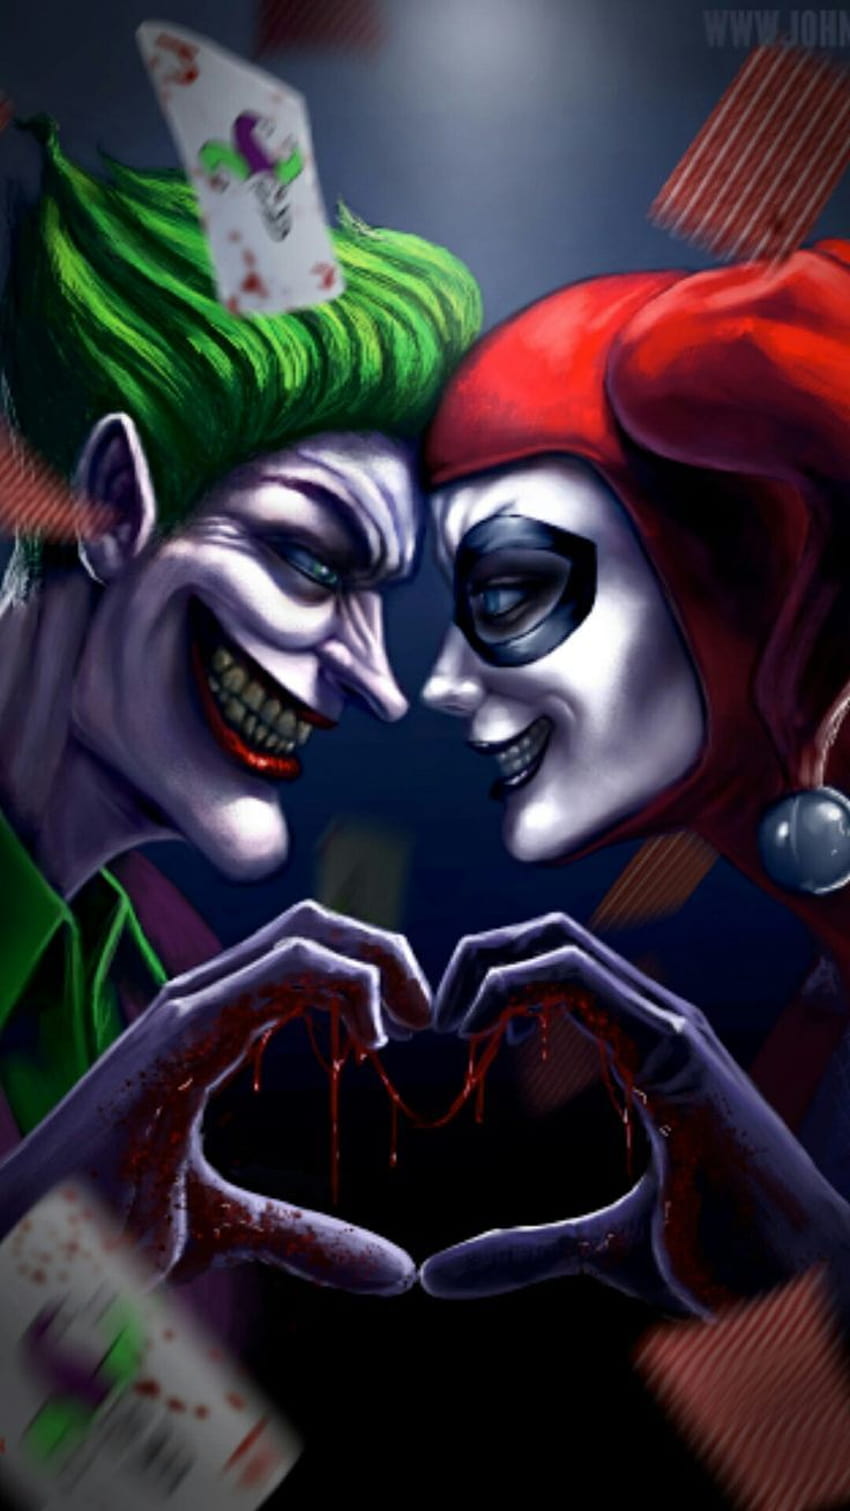 Anime Harley Quinn and Joker, joker anime HD phone wallpaper | Pxfuel